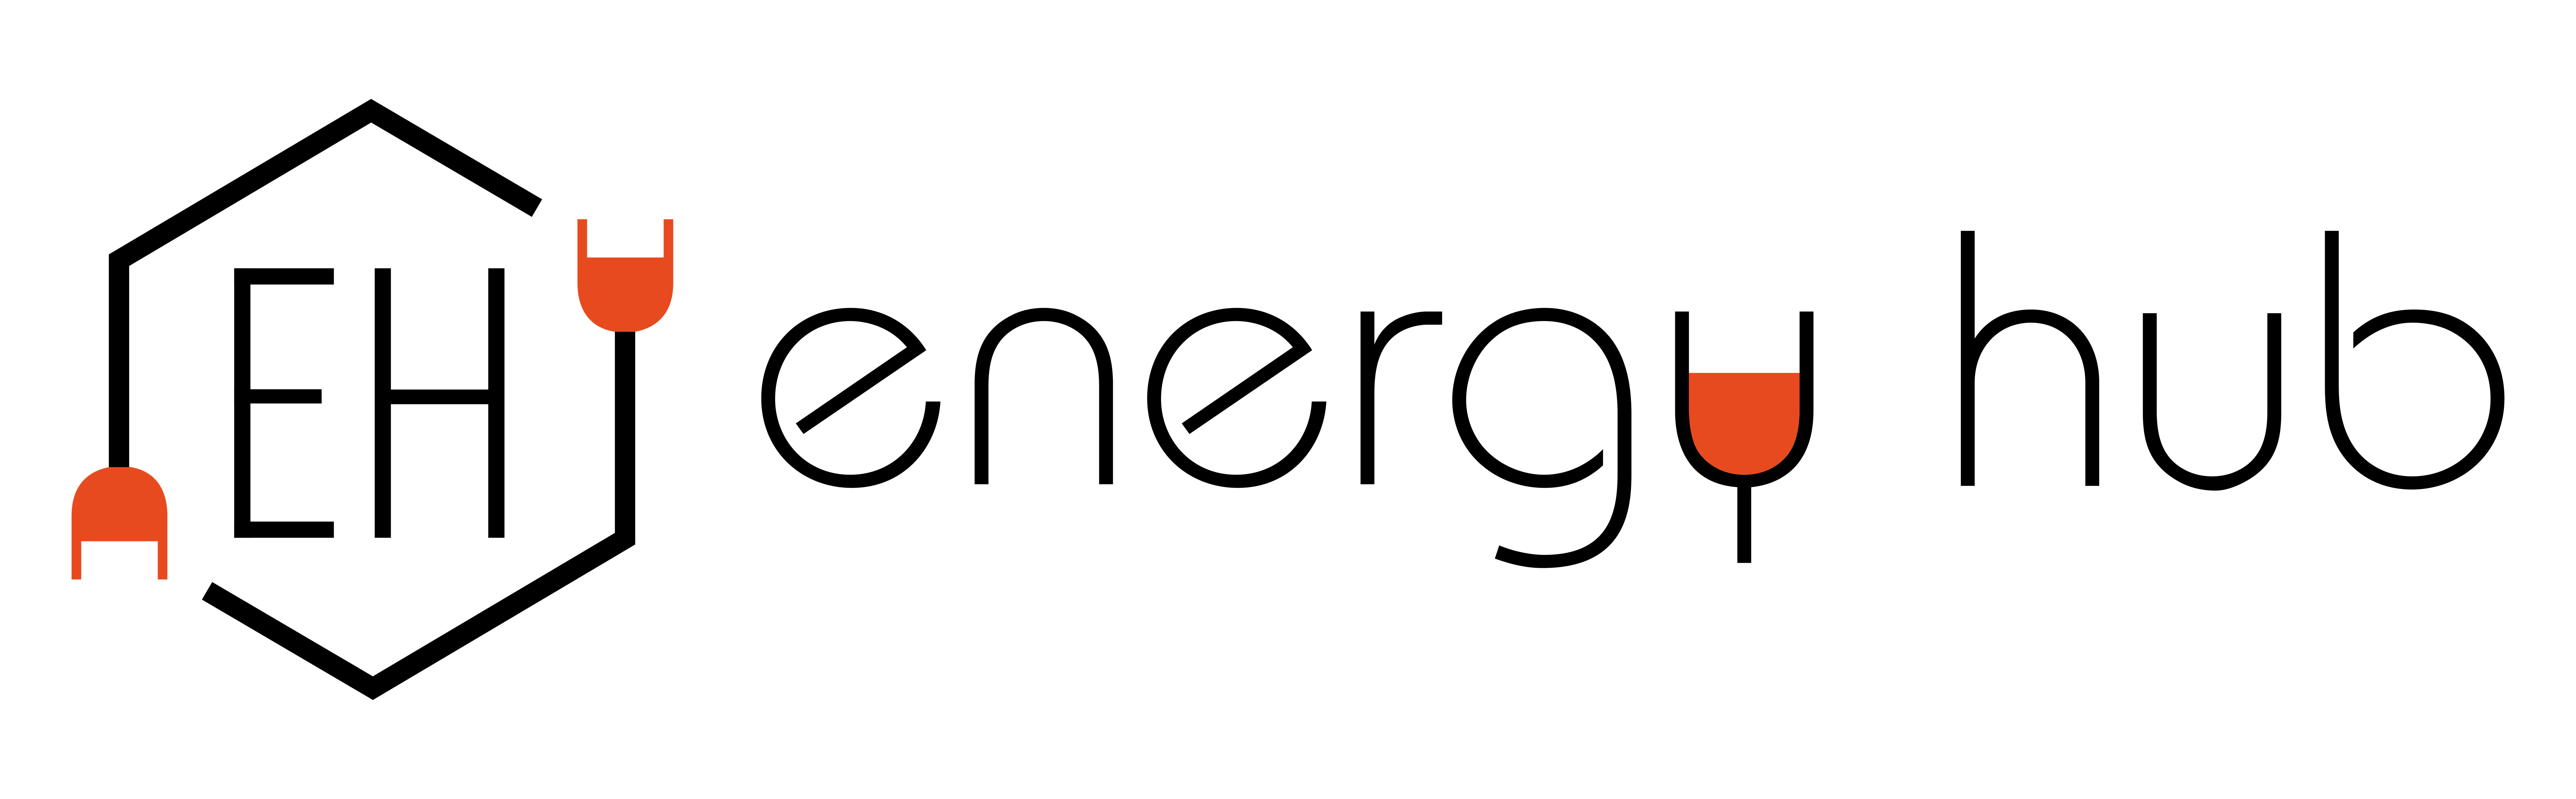 Energy-Hub